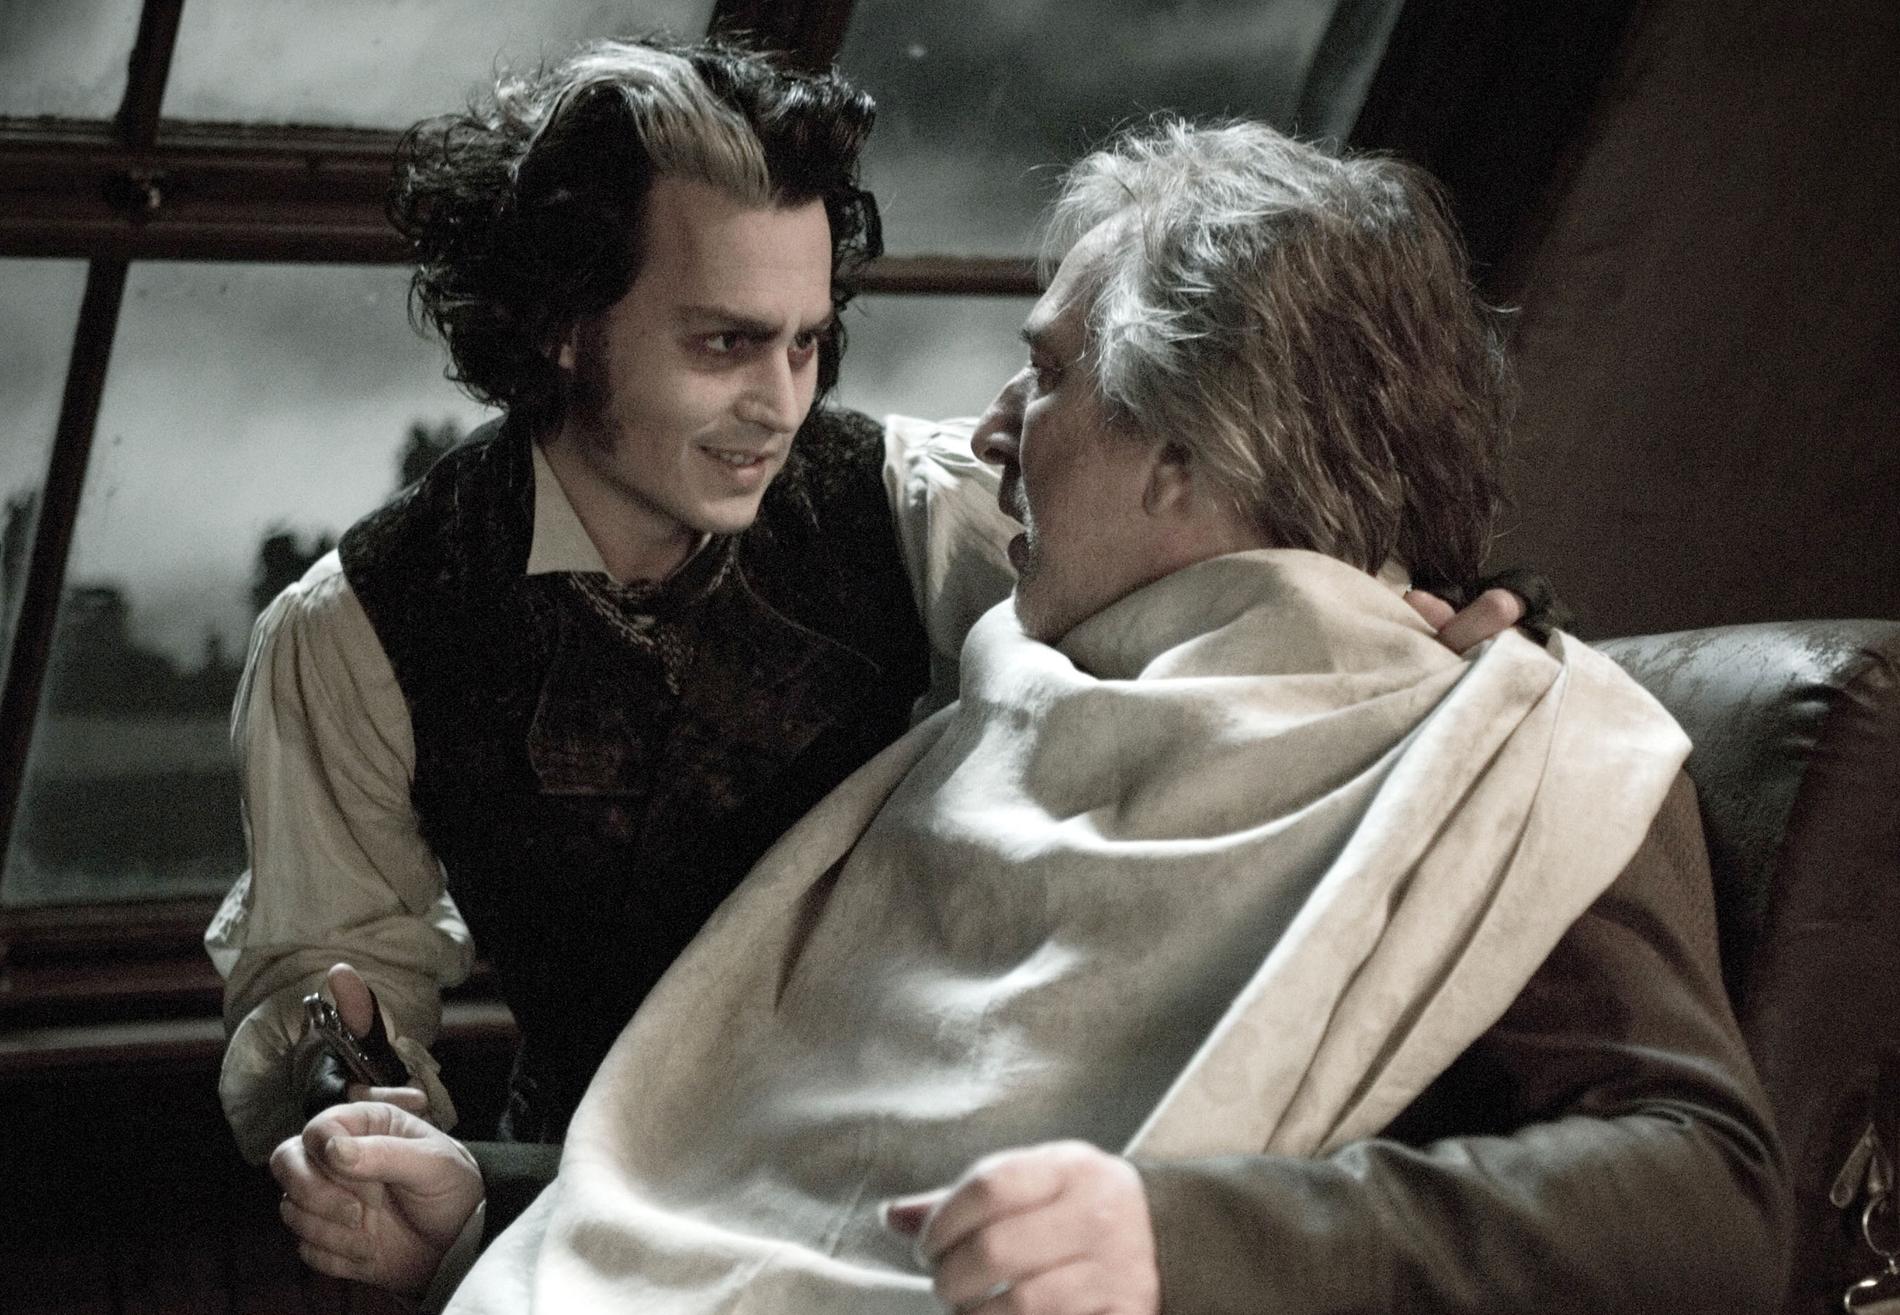 Johnny Depp som Sweeney Todd och Rickman som Judge Turpin i ”Sweeney Todd: The Demon Barber of Fleet Street”